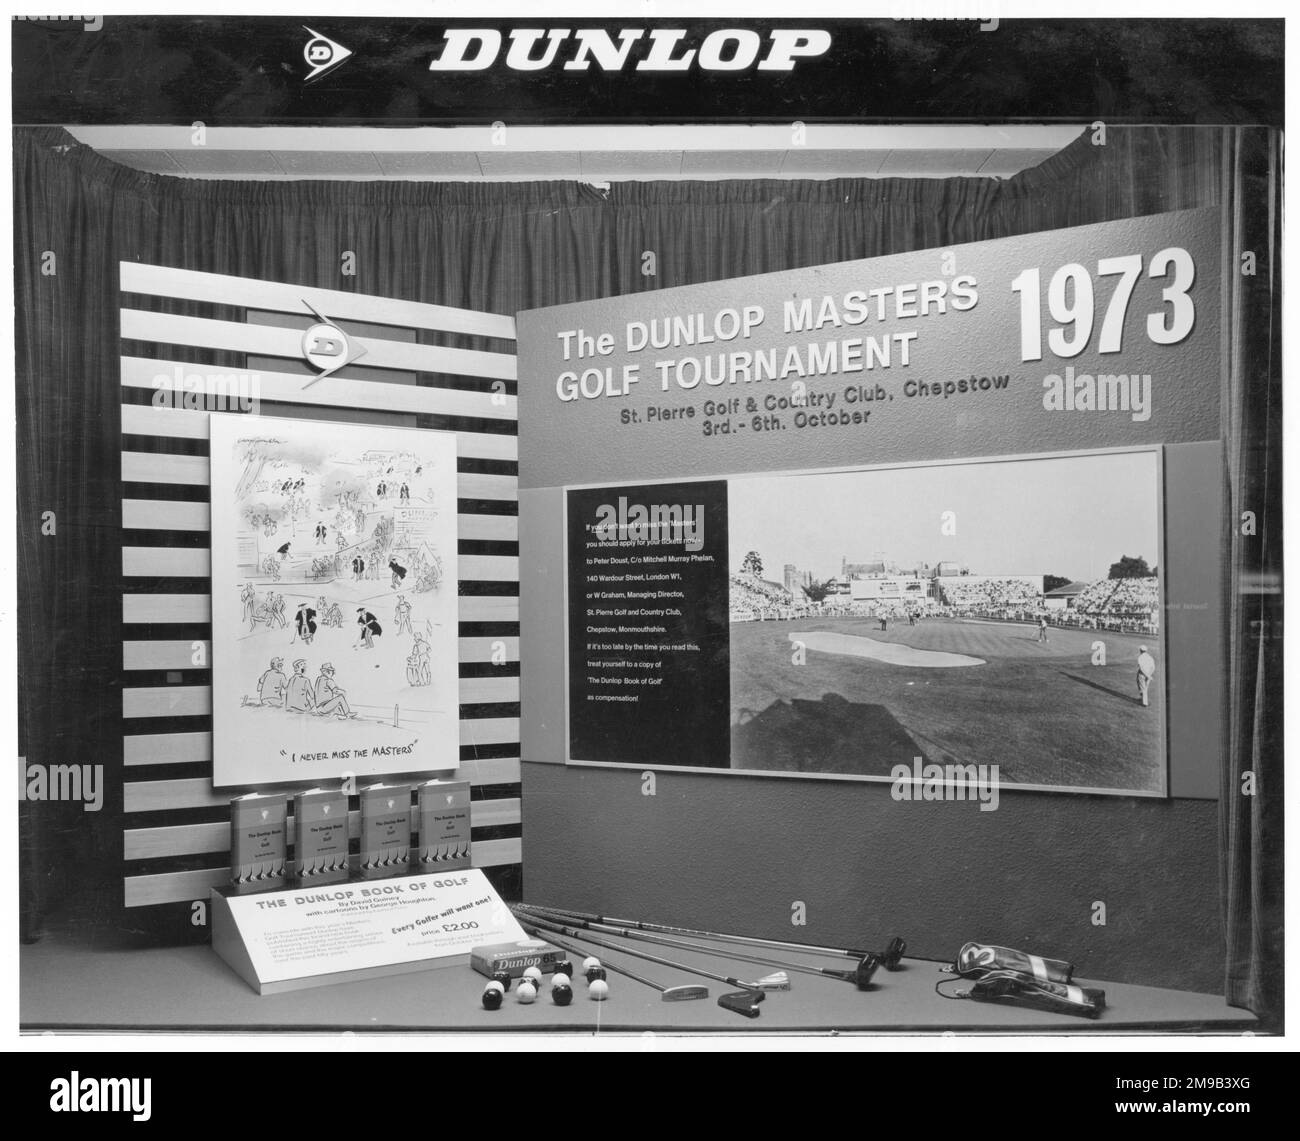 Una pantalla de ventana del torneo de golf Dunlop Masters 1973. Foto de stock